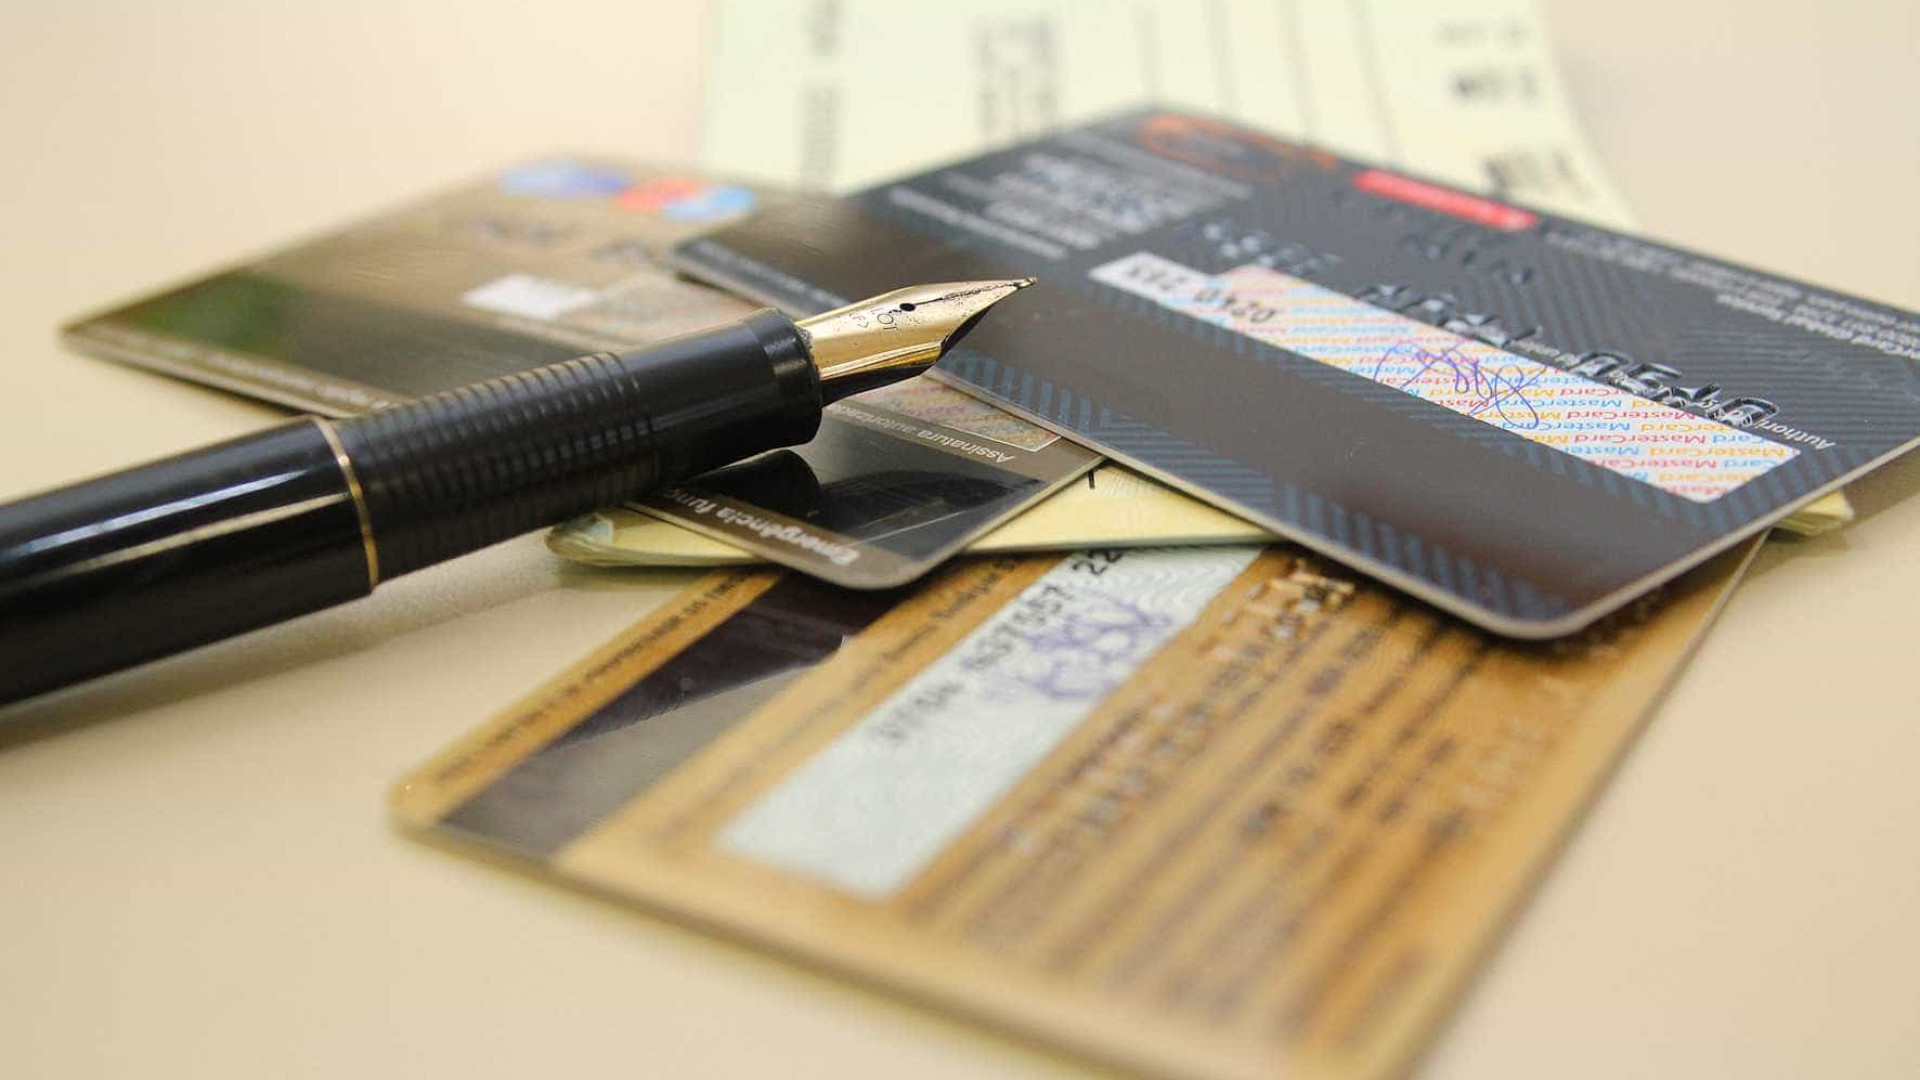 Polícia prende suspeito de clonar cartões de crédito internacionais